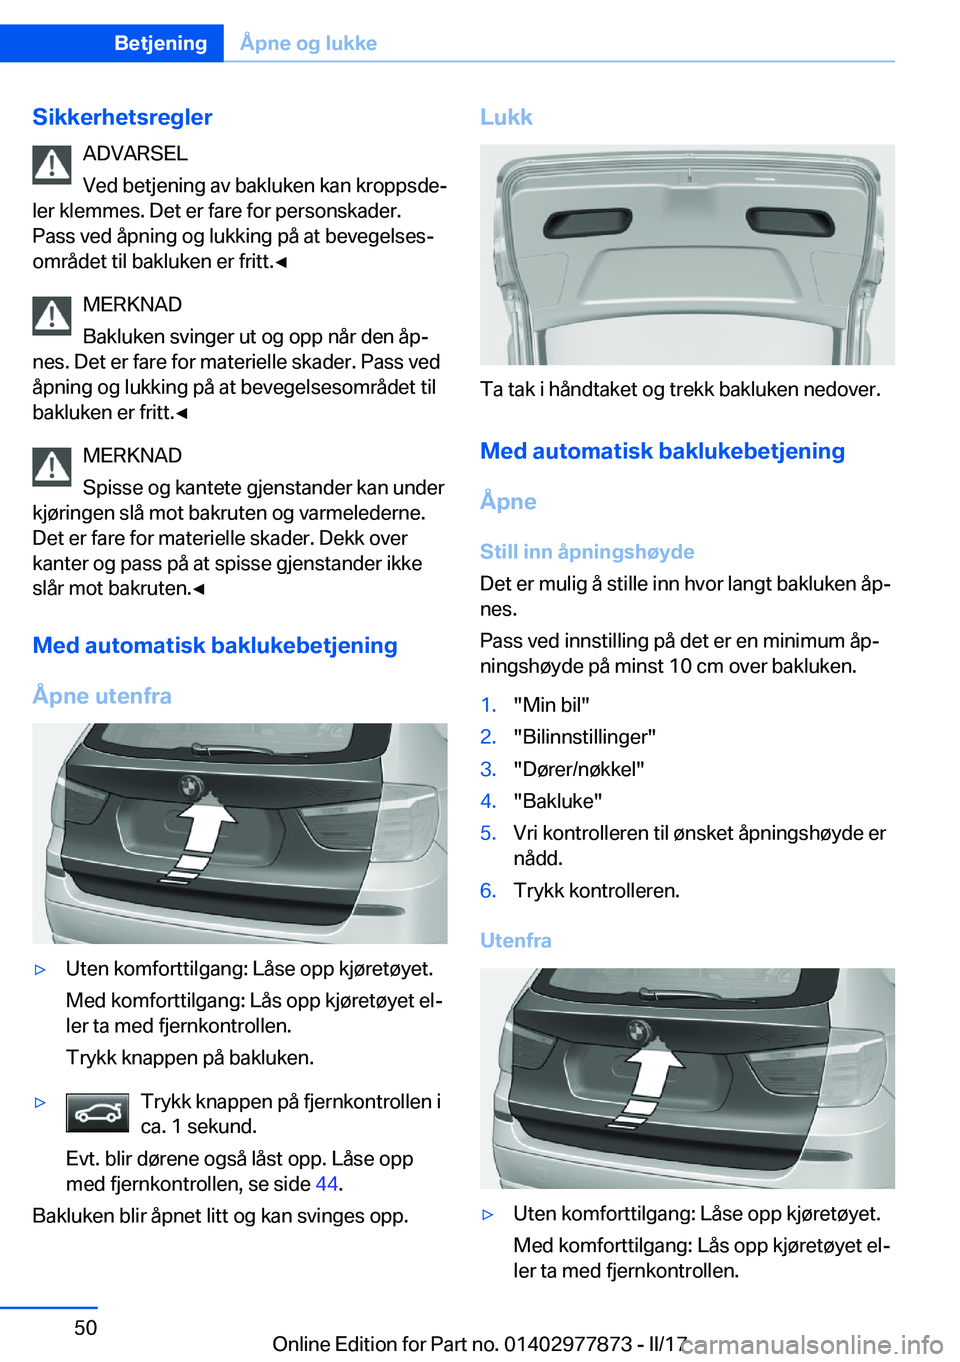 BMW X3 2017  InstruksjonsbØker (in Norwegian) �S�i�k�k�e�r�h�e�t�s�r�e�g�l�e�r�A�D�V�A�R�S�E�L
�V�e�d� �b�e�t�j�e�n�i�n�g� �a�v� �b�a�k�l�u�k�e�n� �k�a�n� �k�r�o�p�p�s�d�ej
�l�e�r� �k�l�e�m�m�e�s�.� �D�e�t� �e�r� �f�a�r�e� �f�o�r� �p�e�r�s�o�n�s